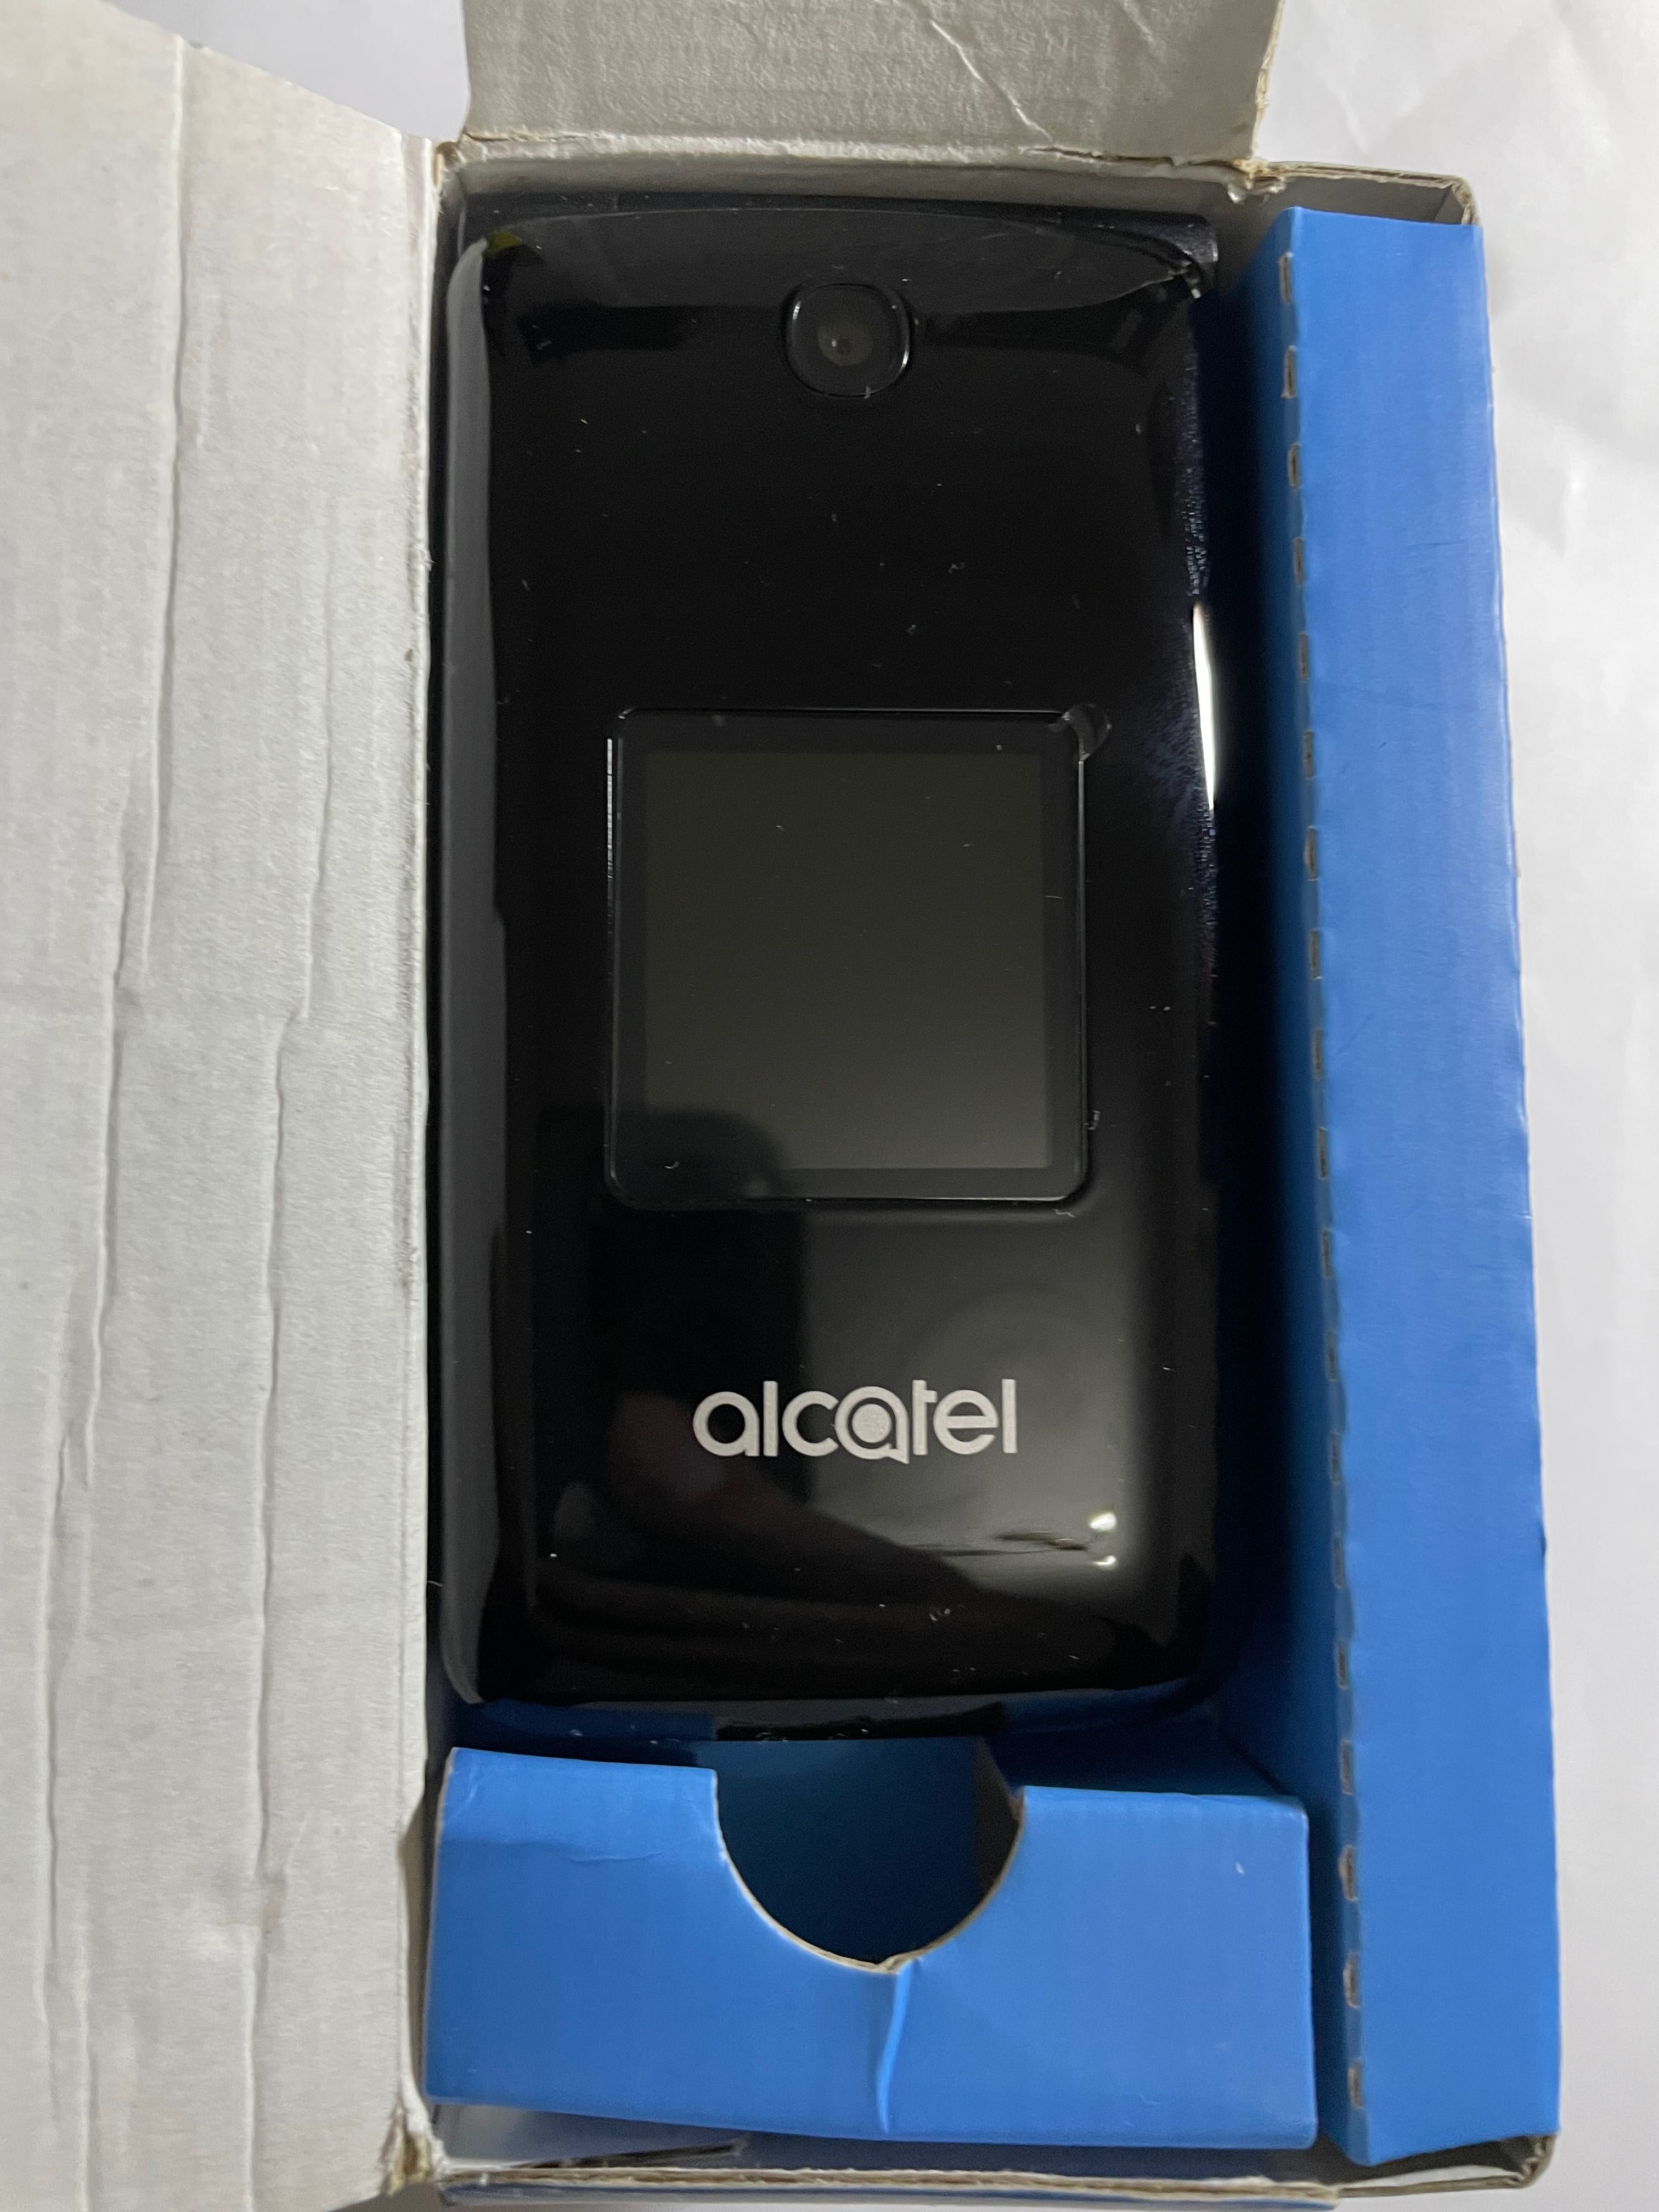 New Alcatel Original USA GSM